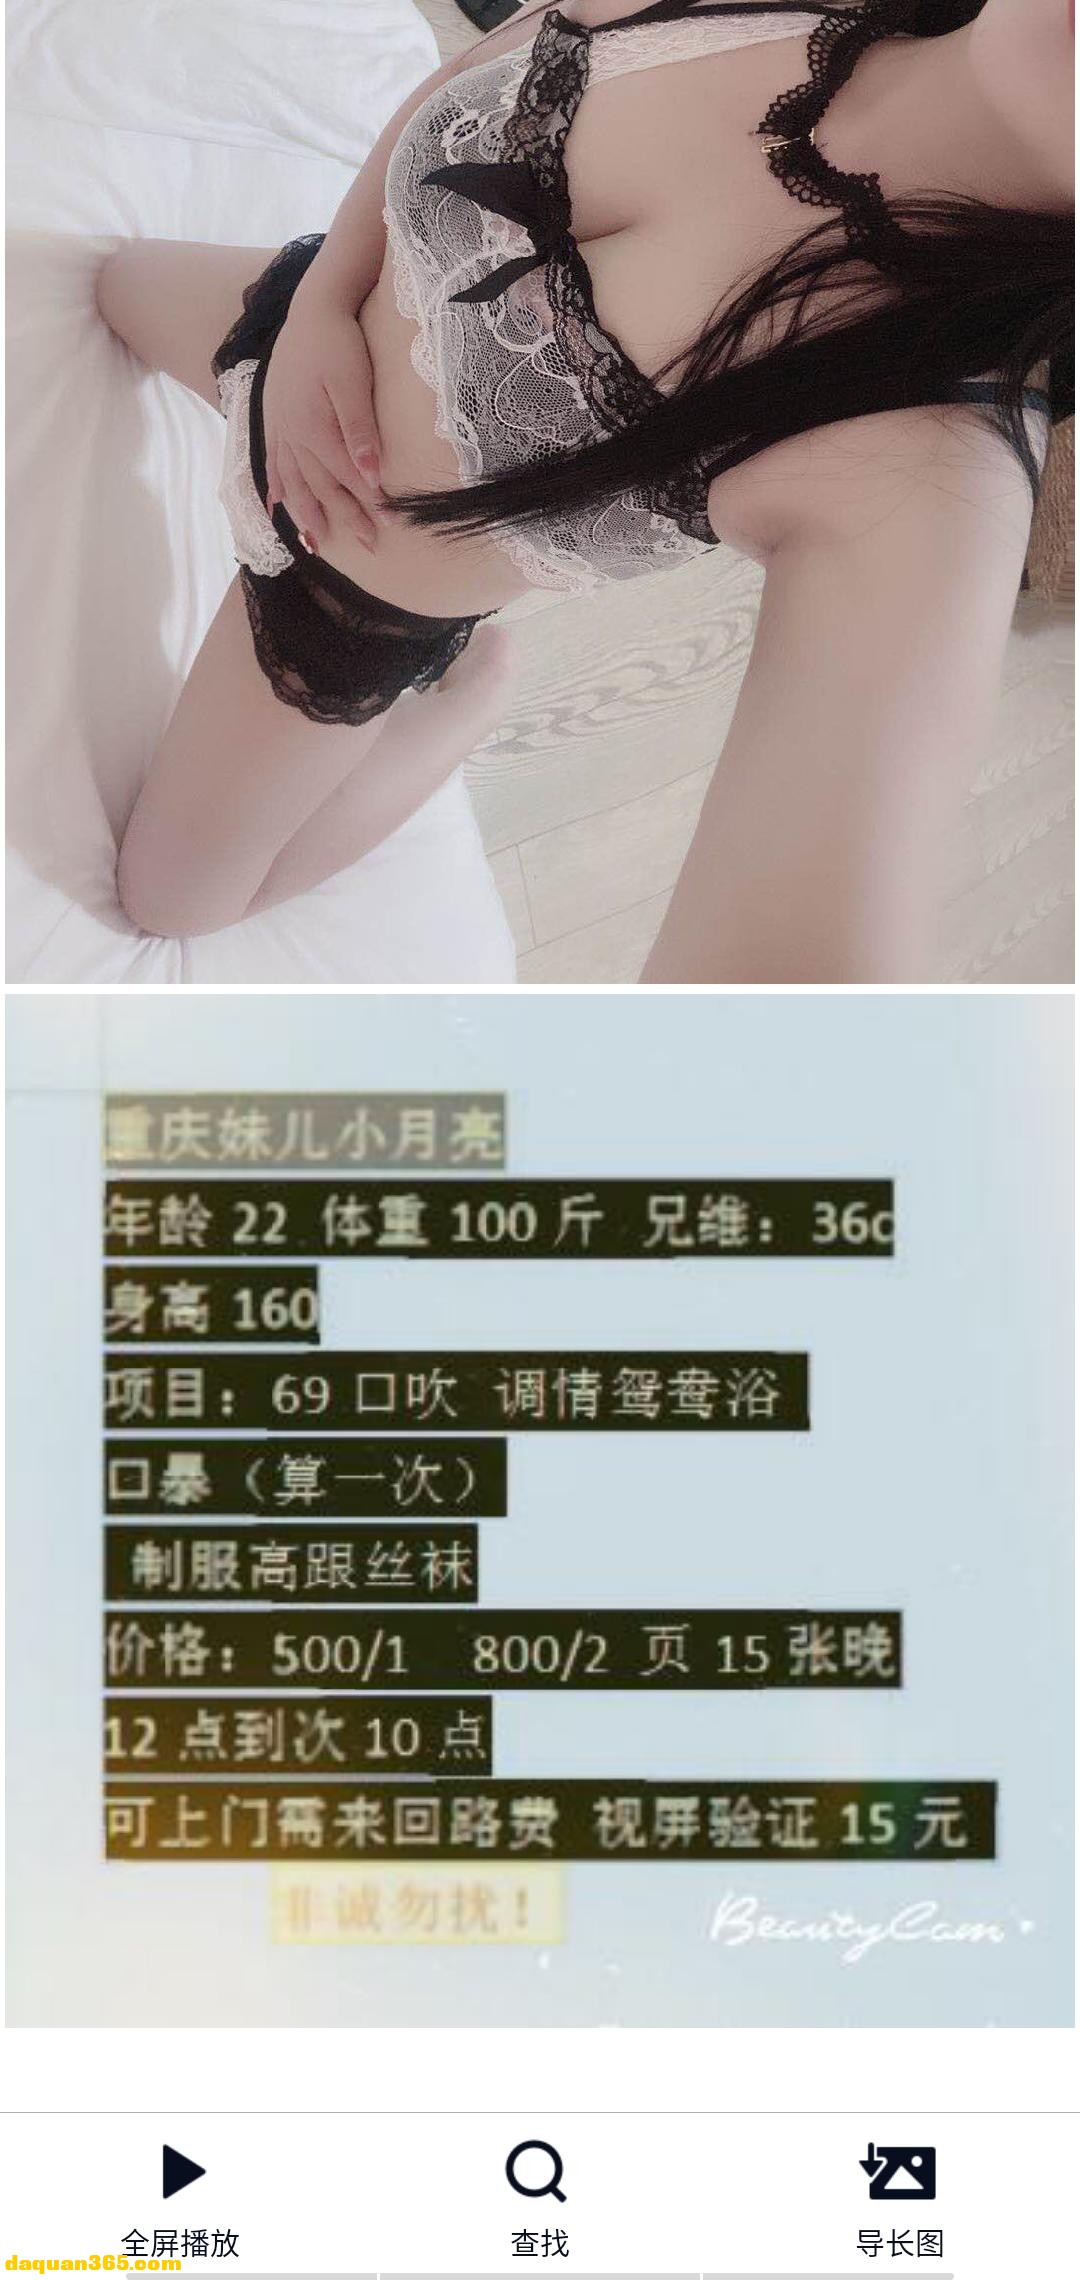 [昆明]【2020年10月】中昆医大湖南妹子-1.png